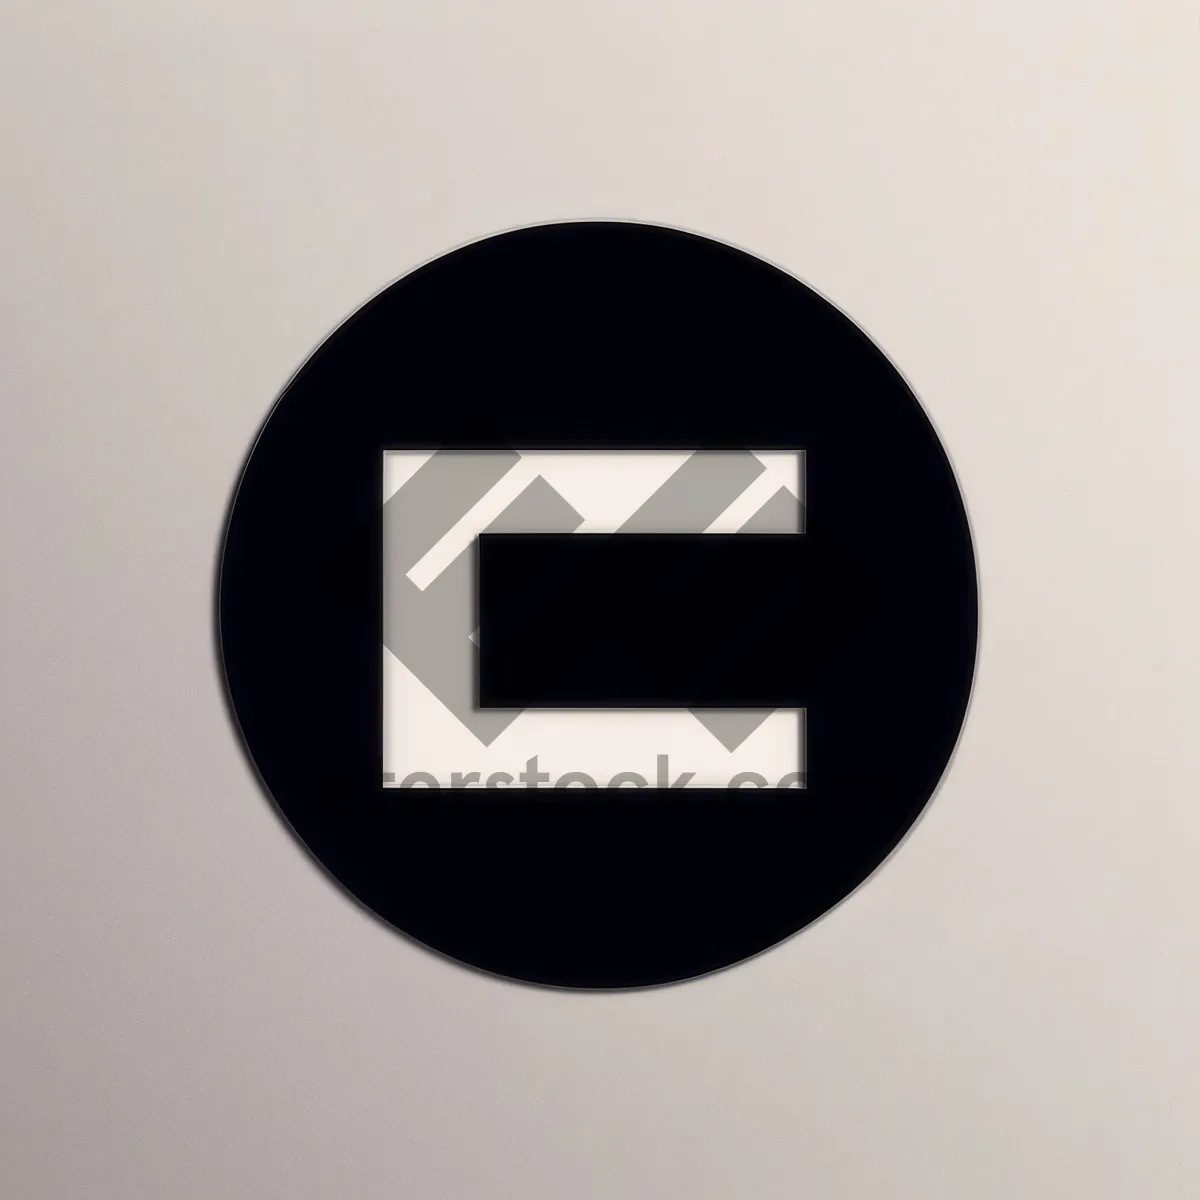 Modern Metallic Round Web Button Icon